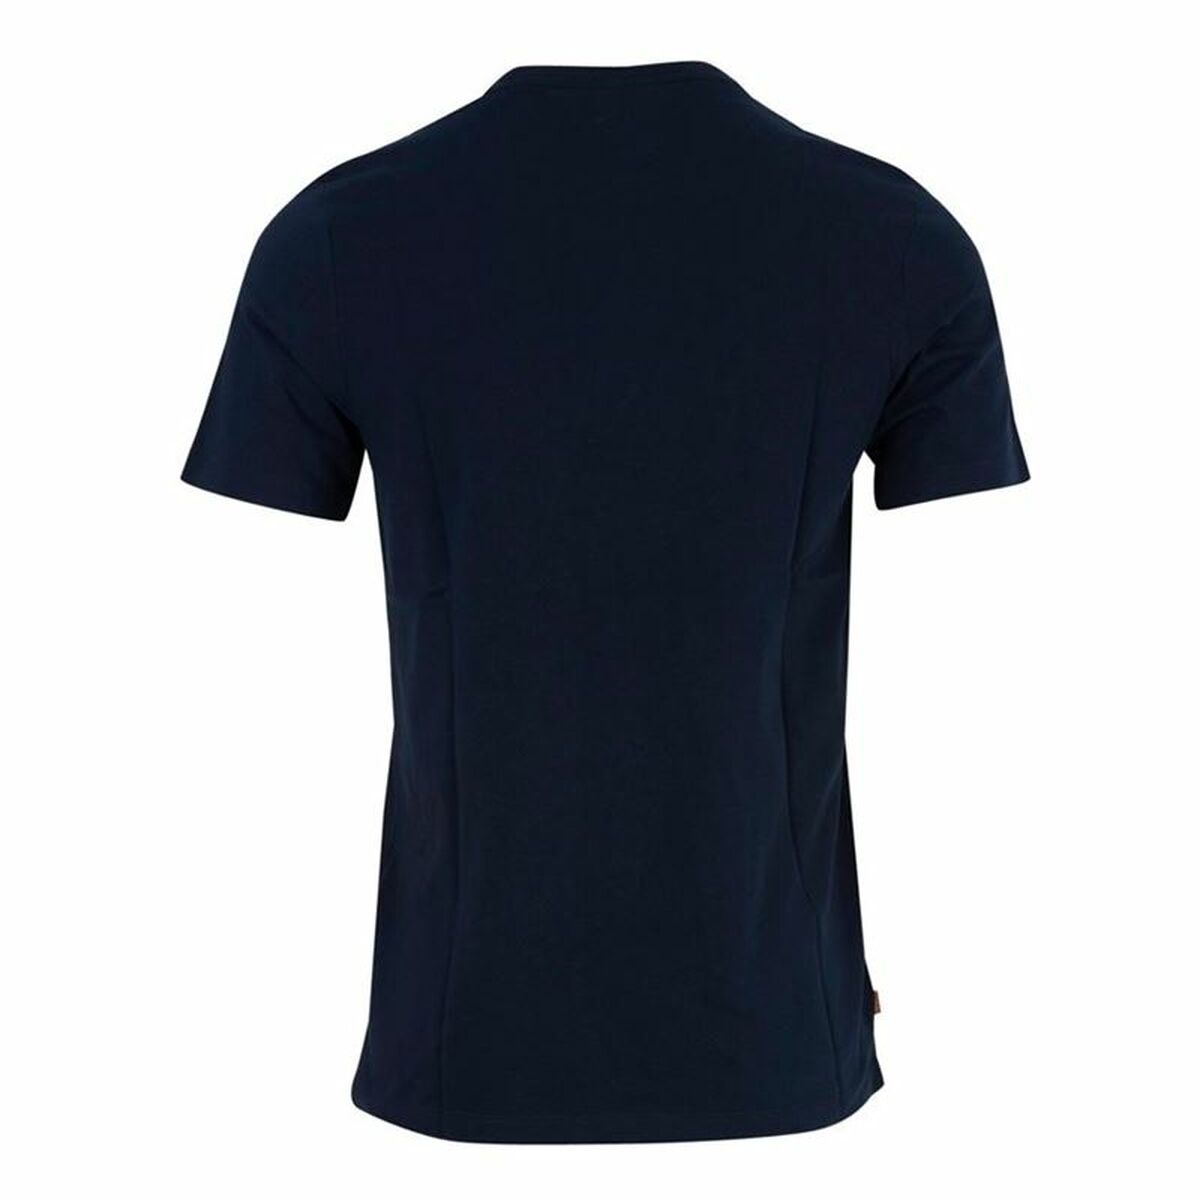 T-shirt Timberland Kennebec Linear Navy Blue Men